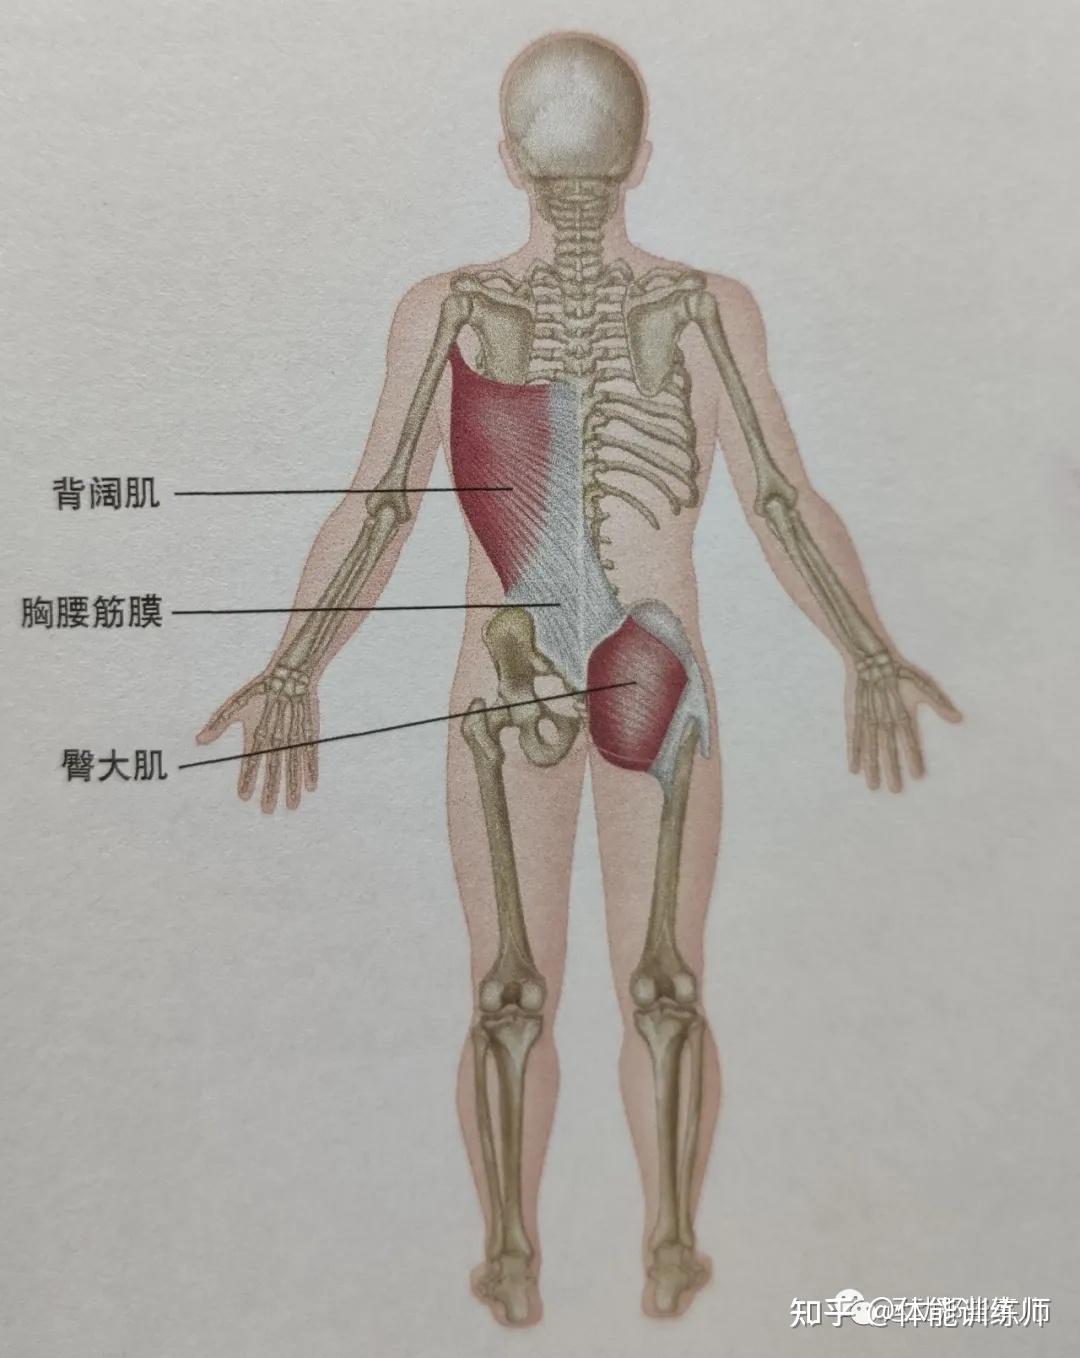 人体筋膜链中有一条后斜链(先了解人体的基础解剖)臀部如何导致肩颈